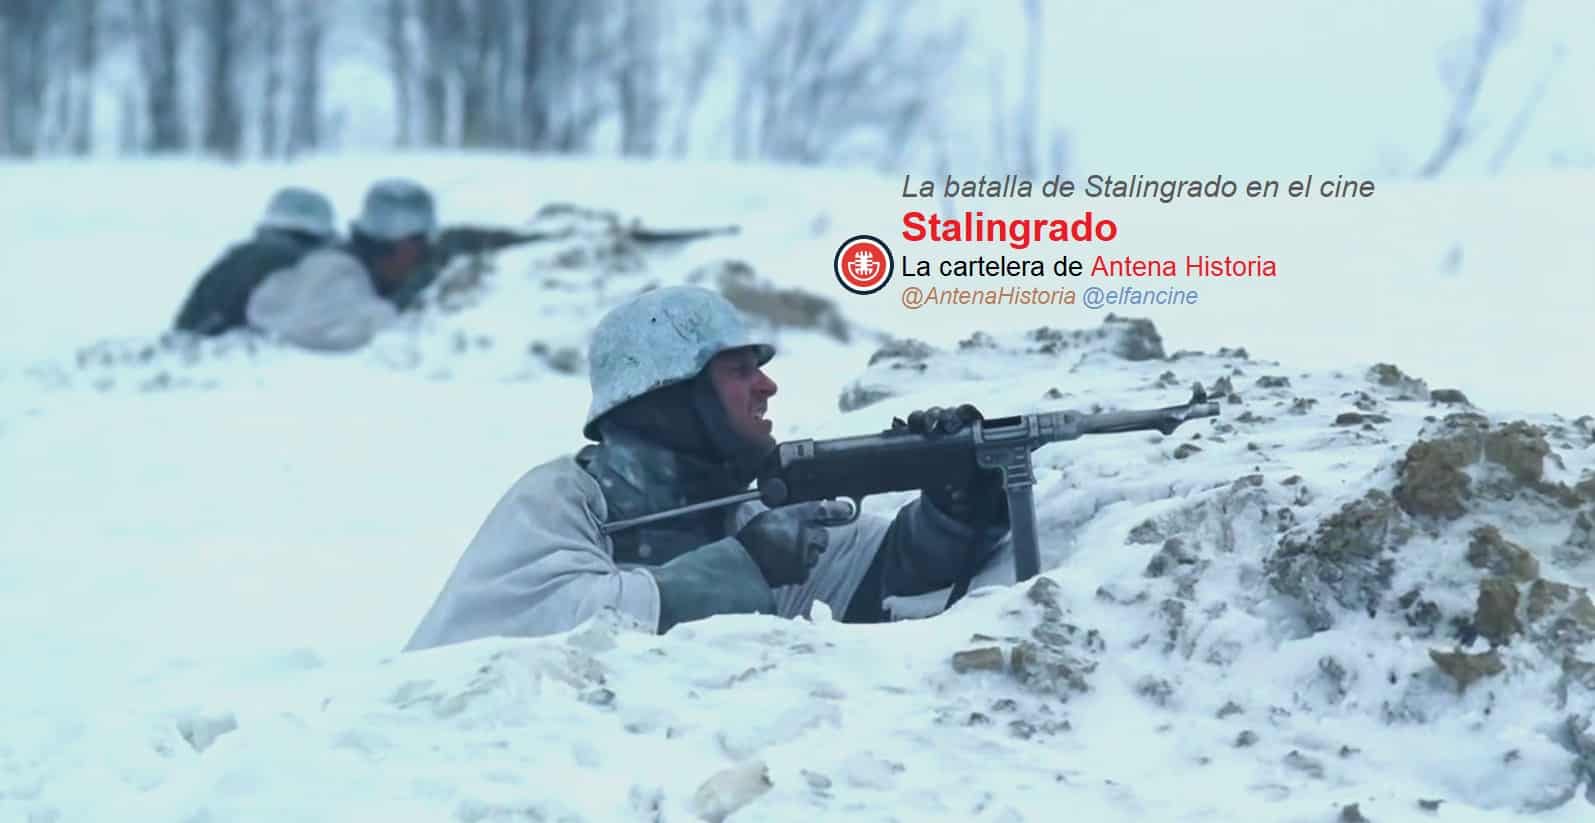 Batalla de Stalingrado en el cine - Stalingrad - Enemigo a las puerta - el fancine - Antena Historia - Alvaro Garcia - Podcast de cines - Vasili Zaitsev - Erwin Koning